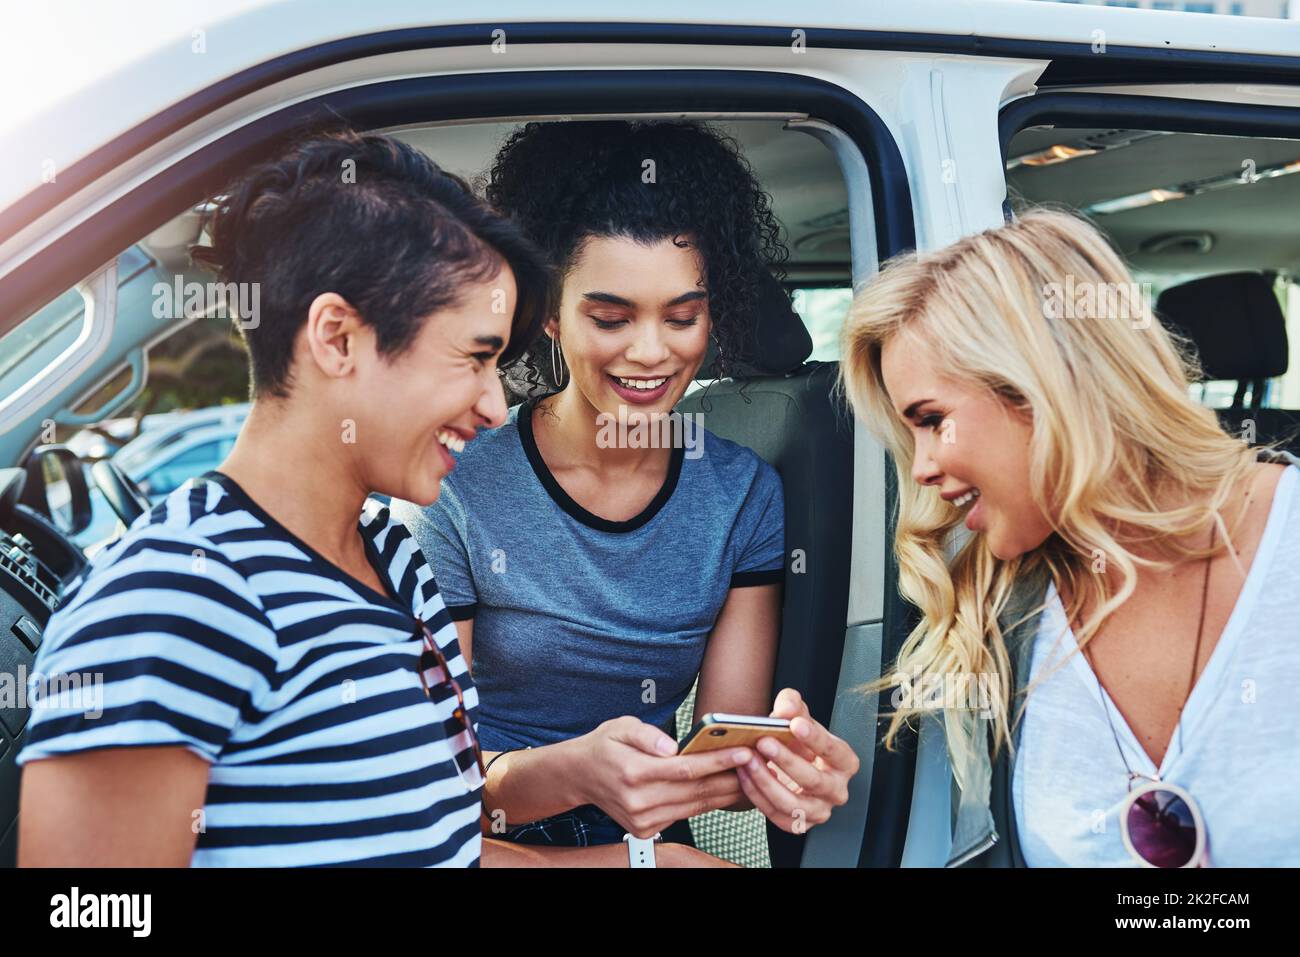 Sollte ich unser Reiseziel online teilen? Aufnahme von Freunden, die auf einem Handy unterwegs etwas angeschaut haben. Stockfoto